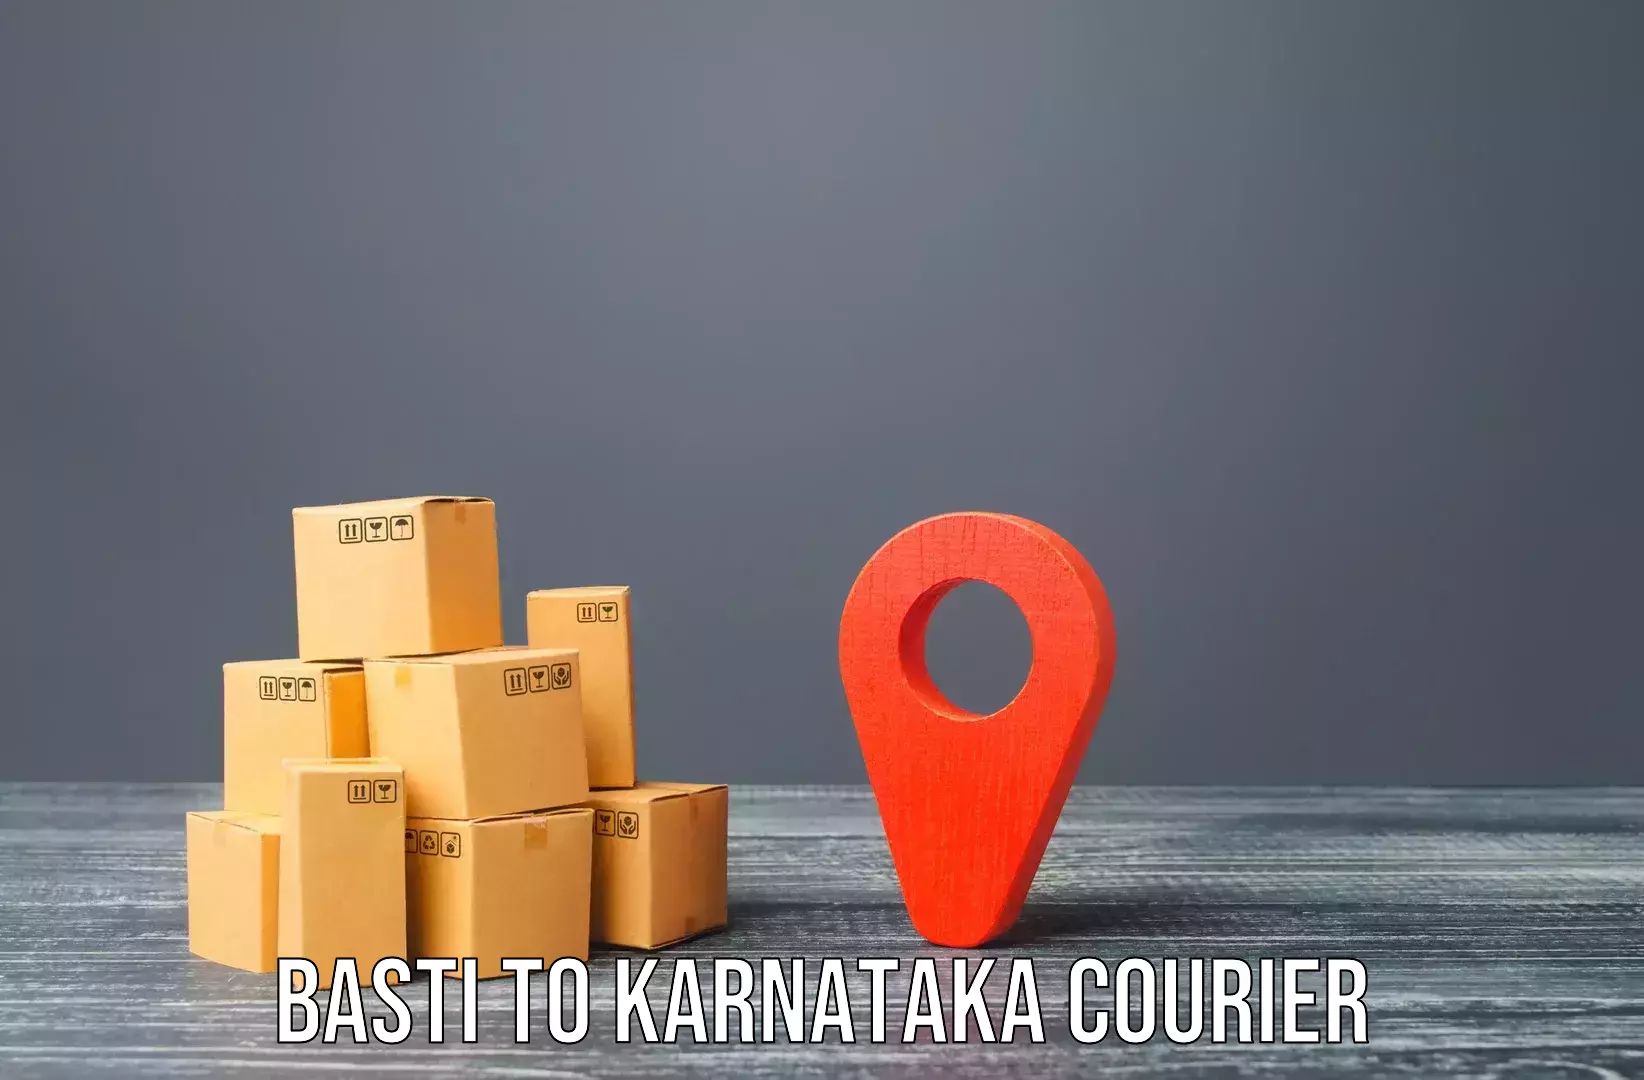 Professional moving assistance Basti to Karnataka